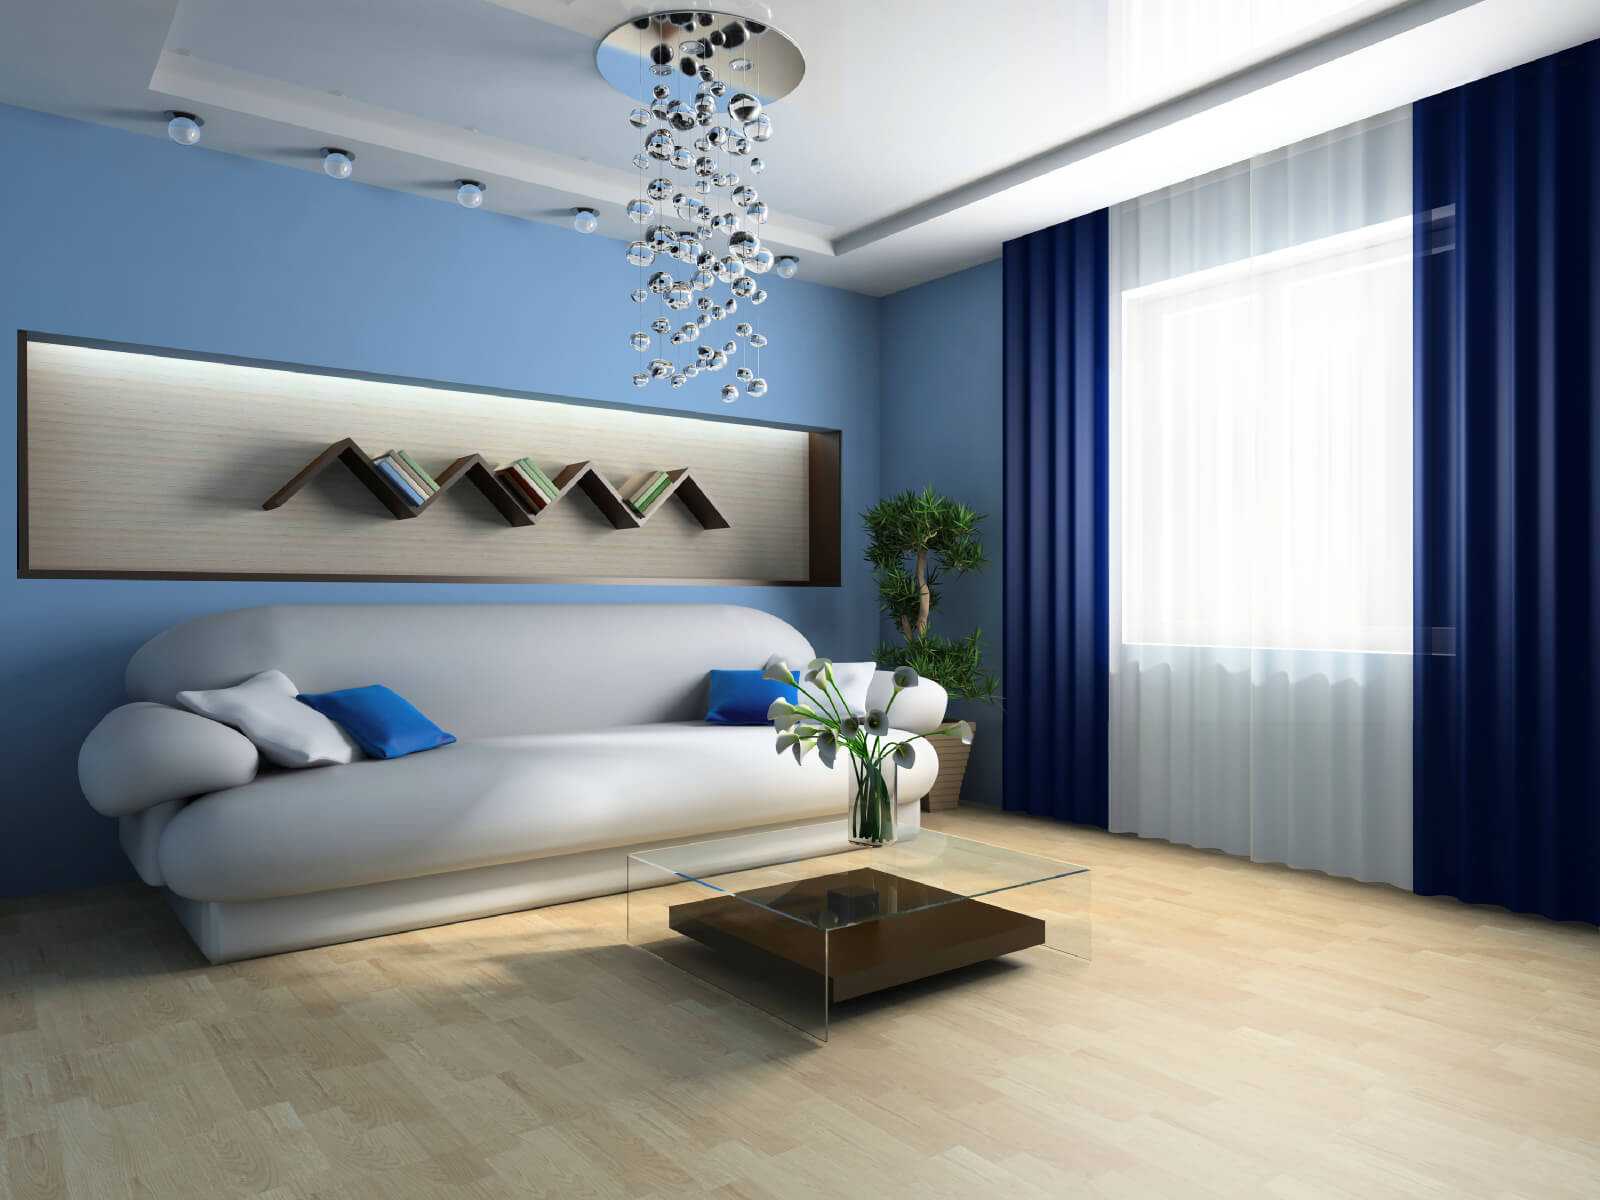 Как выбрать обои: лучшие, какие для комнаты, подбор большой по цвету, как правильно, фисташковый и мятный